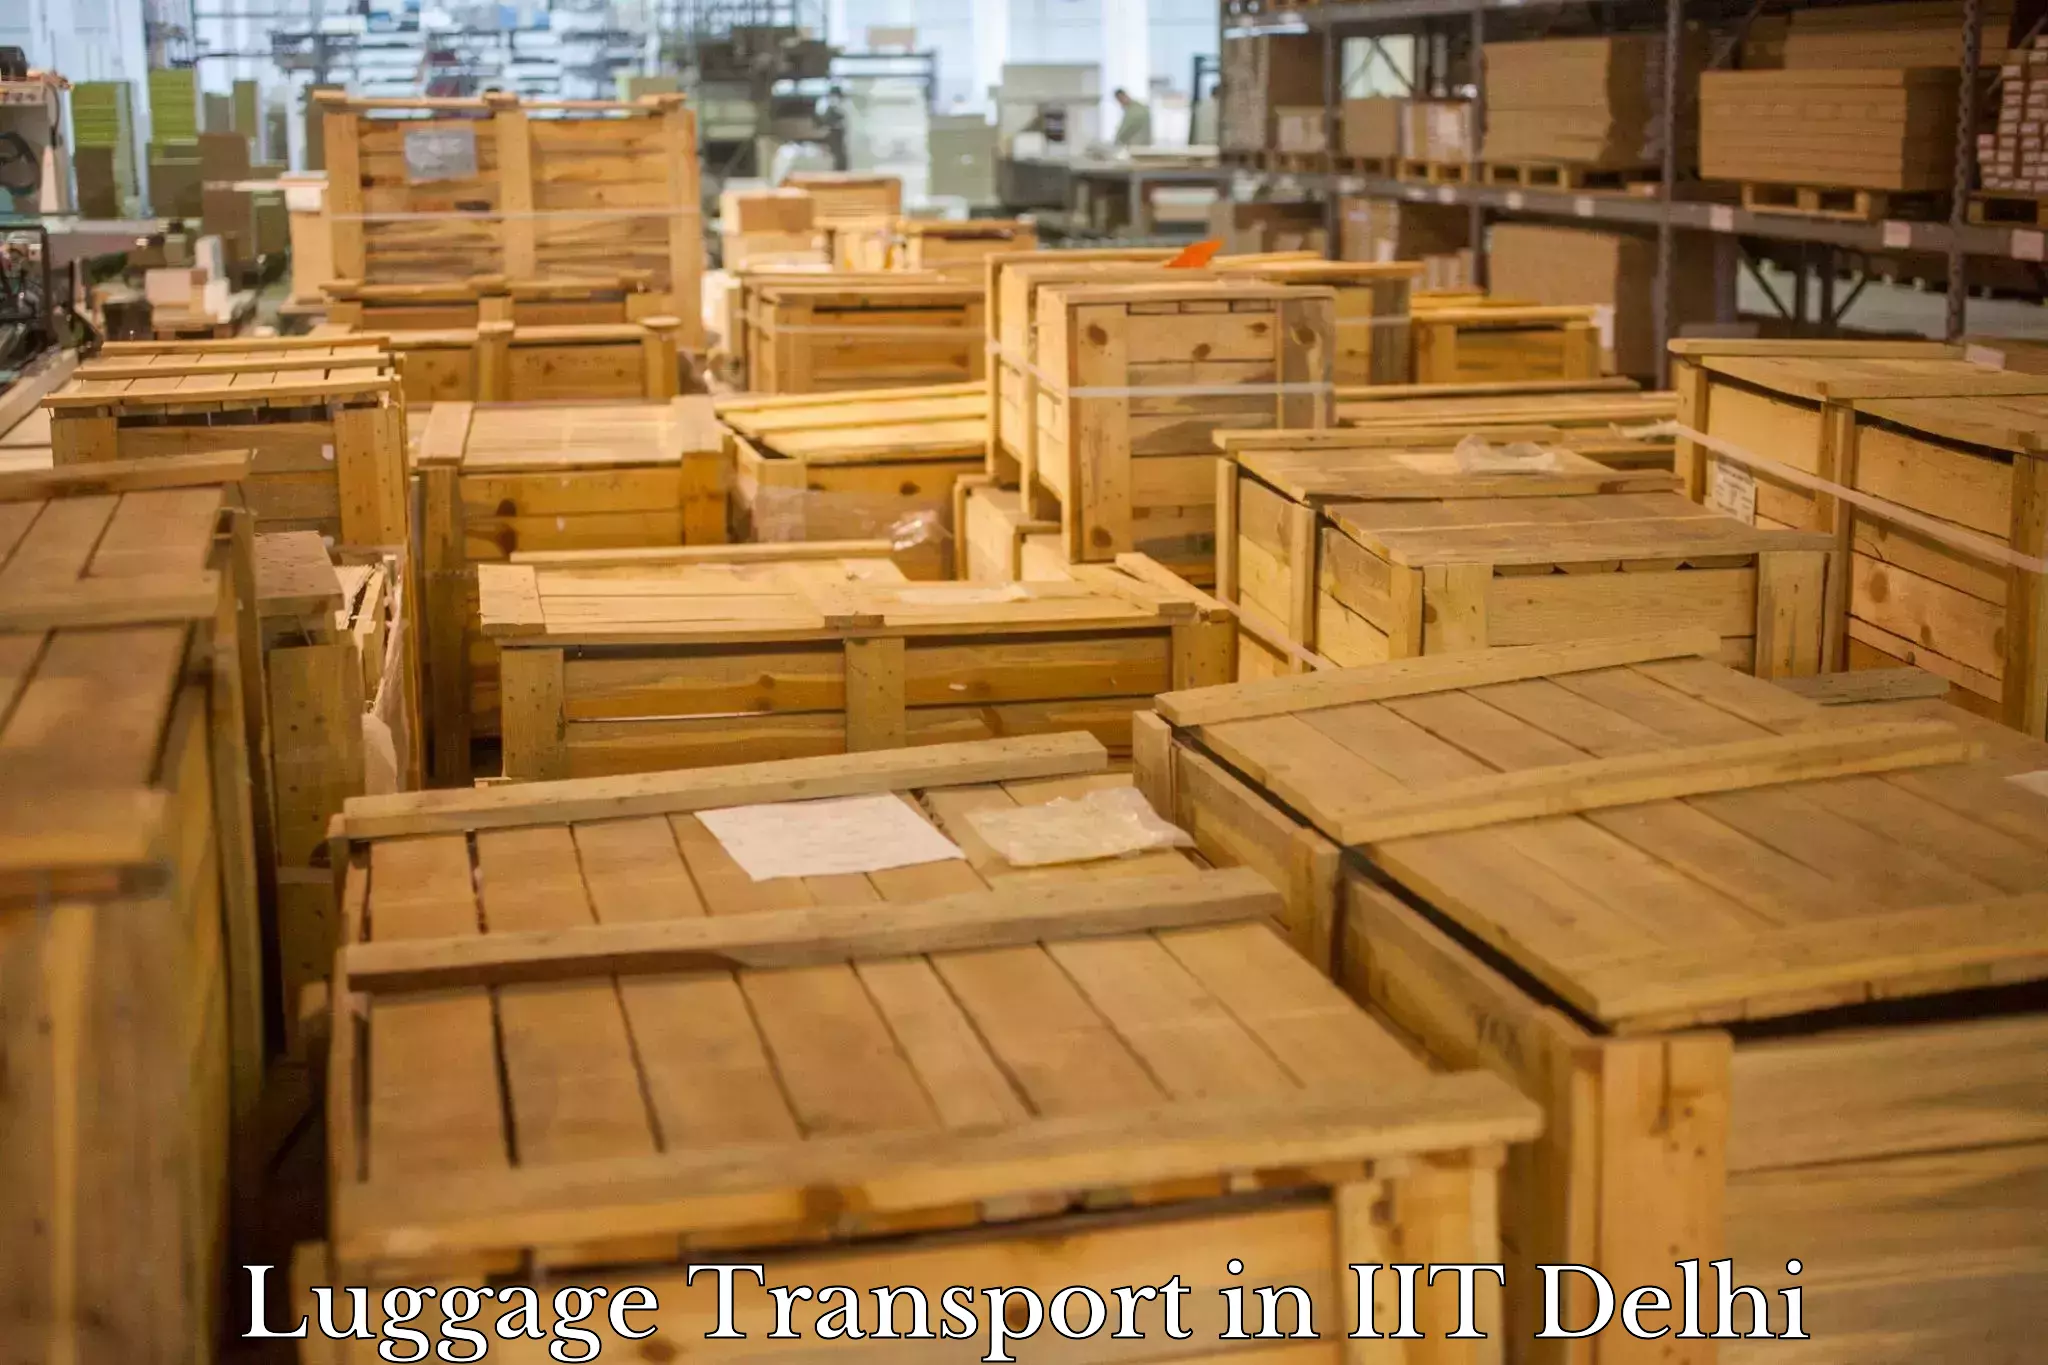 Quick baggage pickup in IIT Delhi